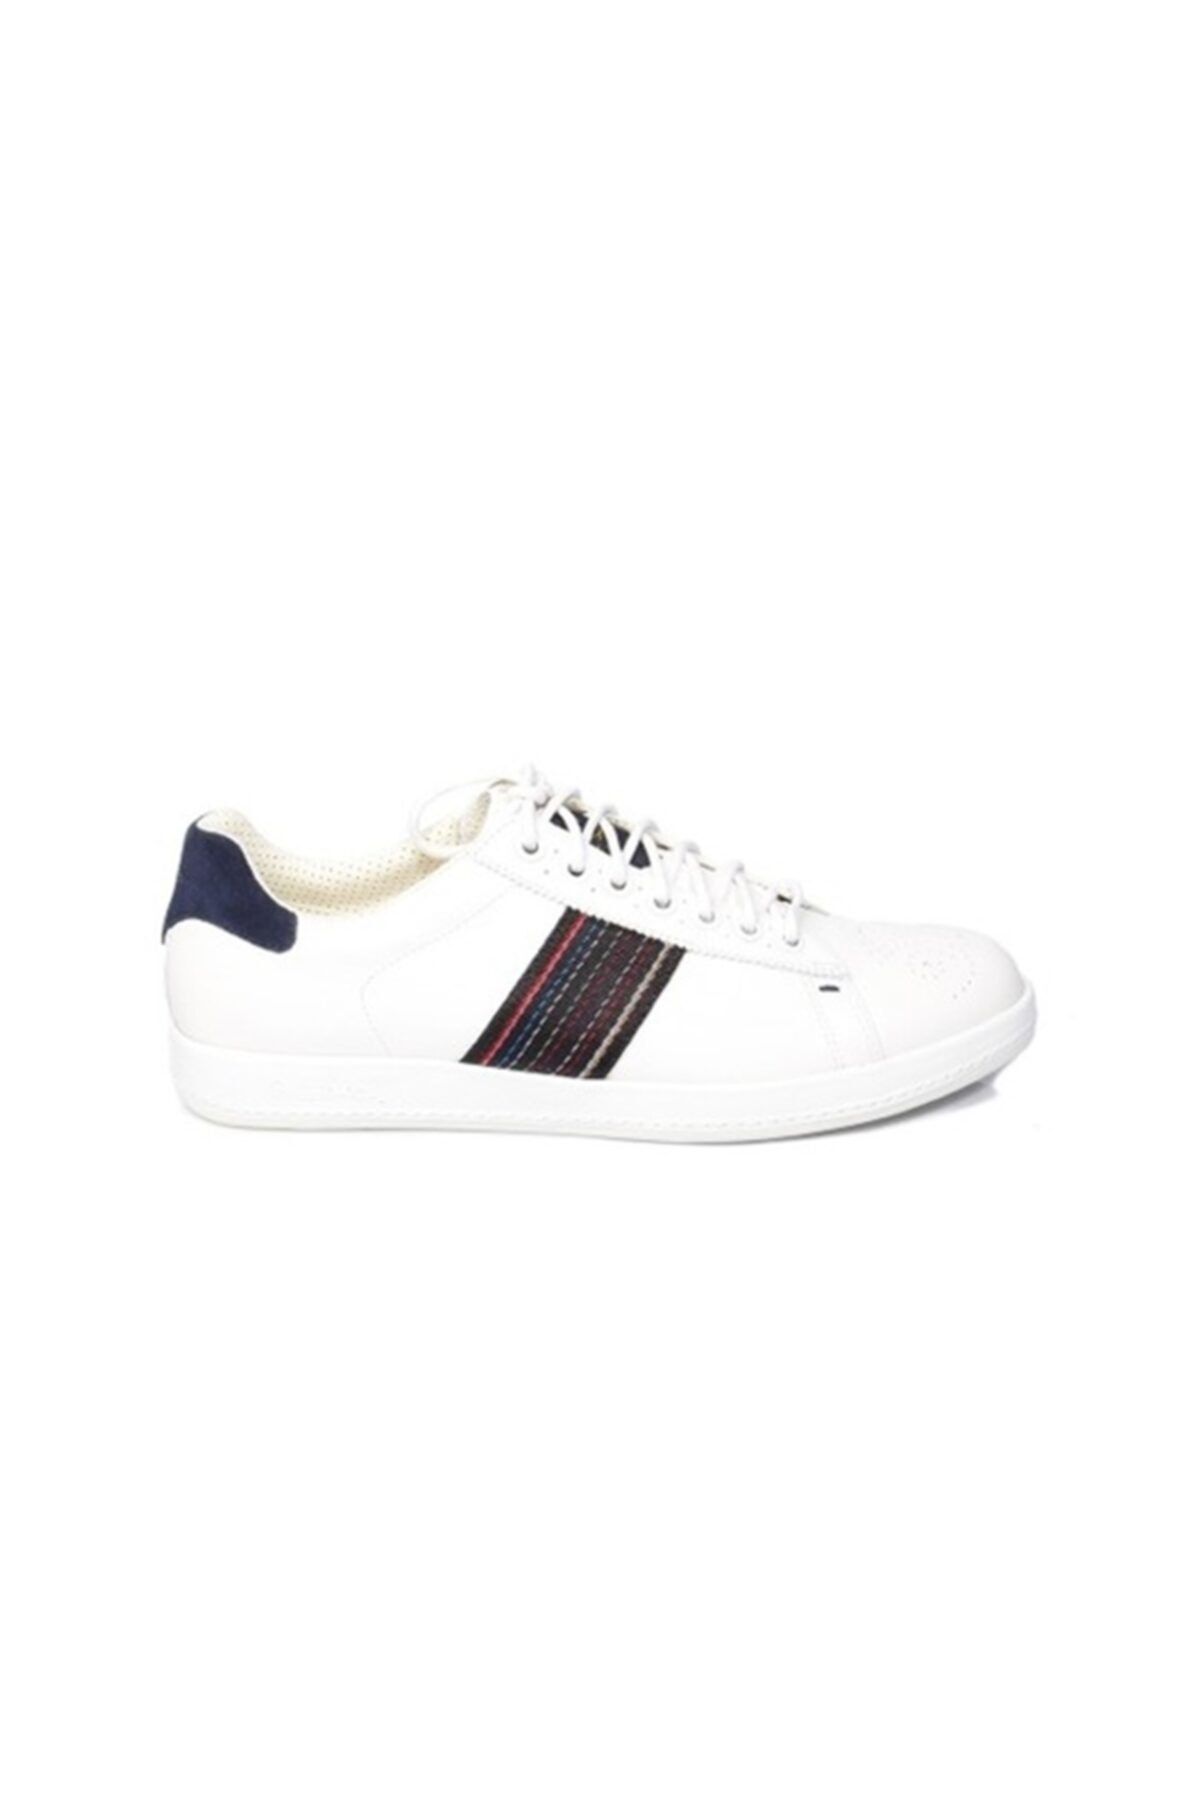 Paul Smith Erkek Spor Ayakkabı Beyaz Smxg P215